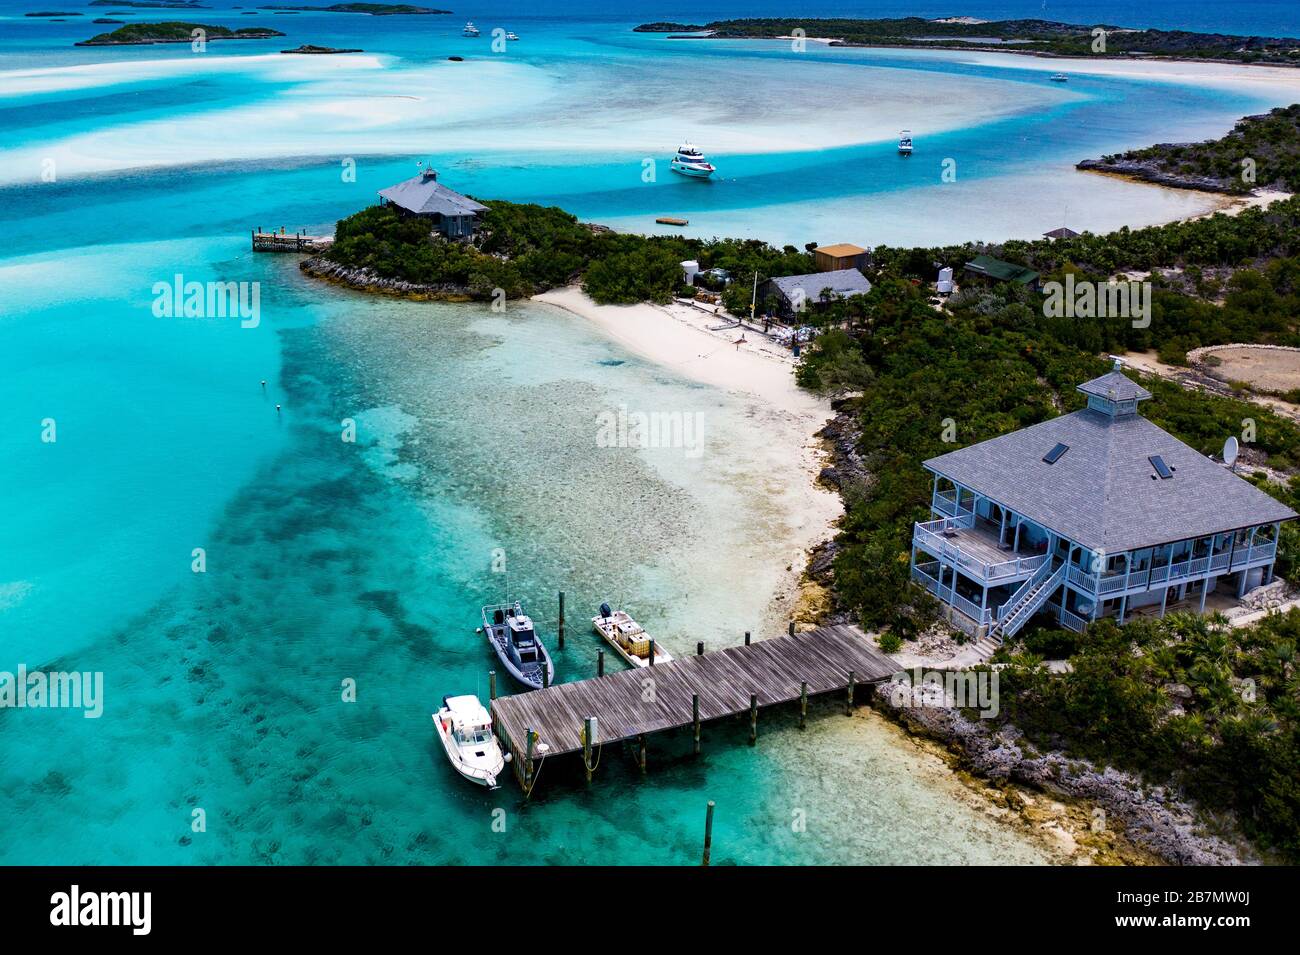 Exuma Cays Land and Sea Park, Exuma Island Chain, Bahamas Stock Photo